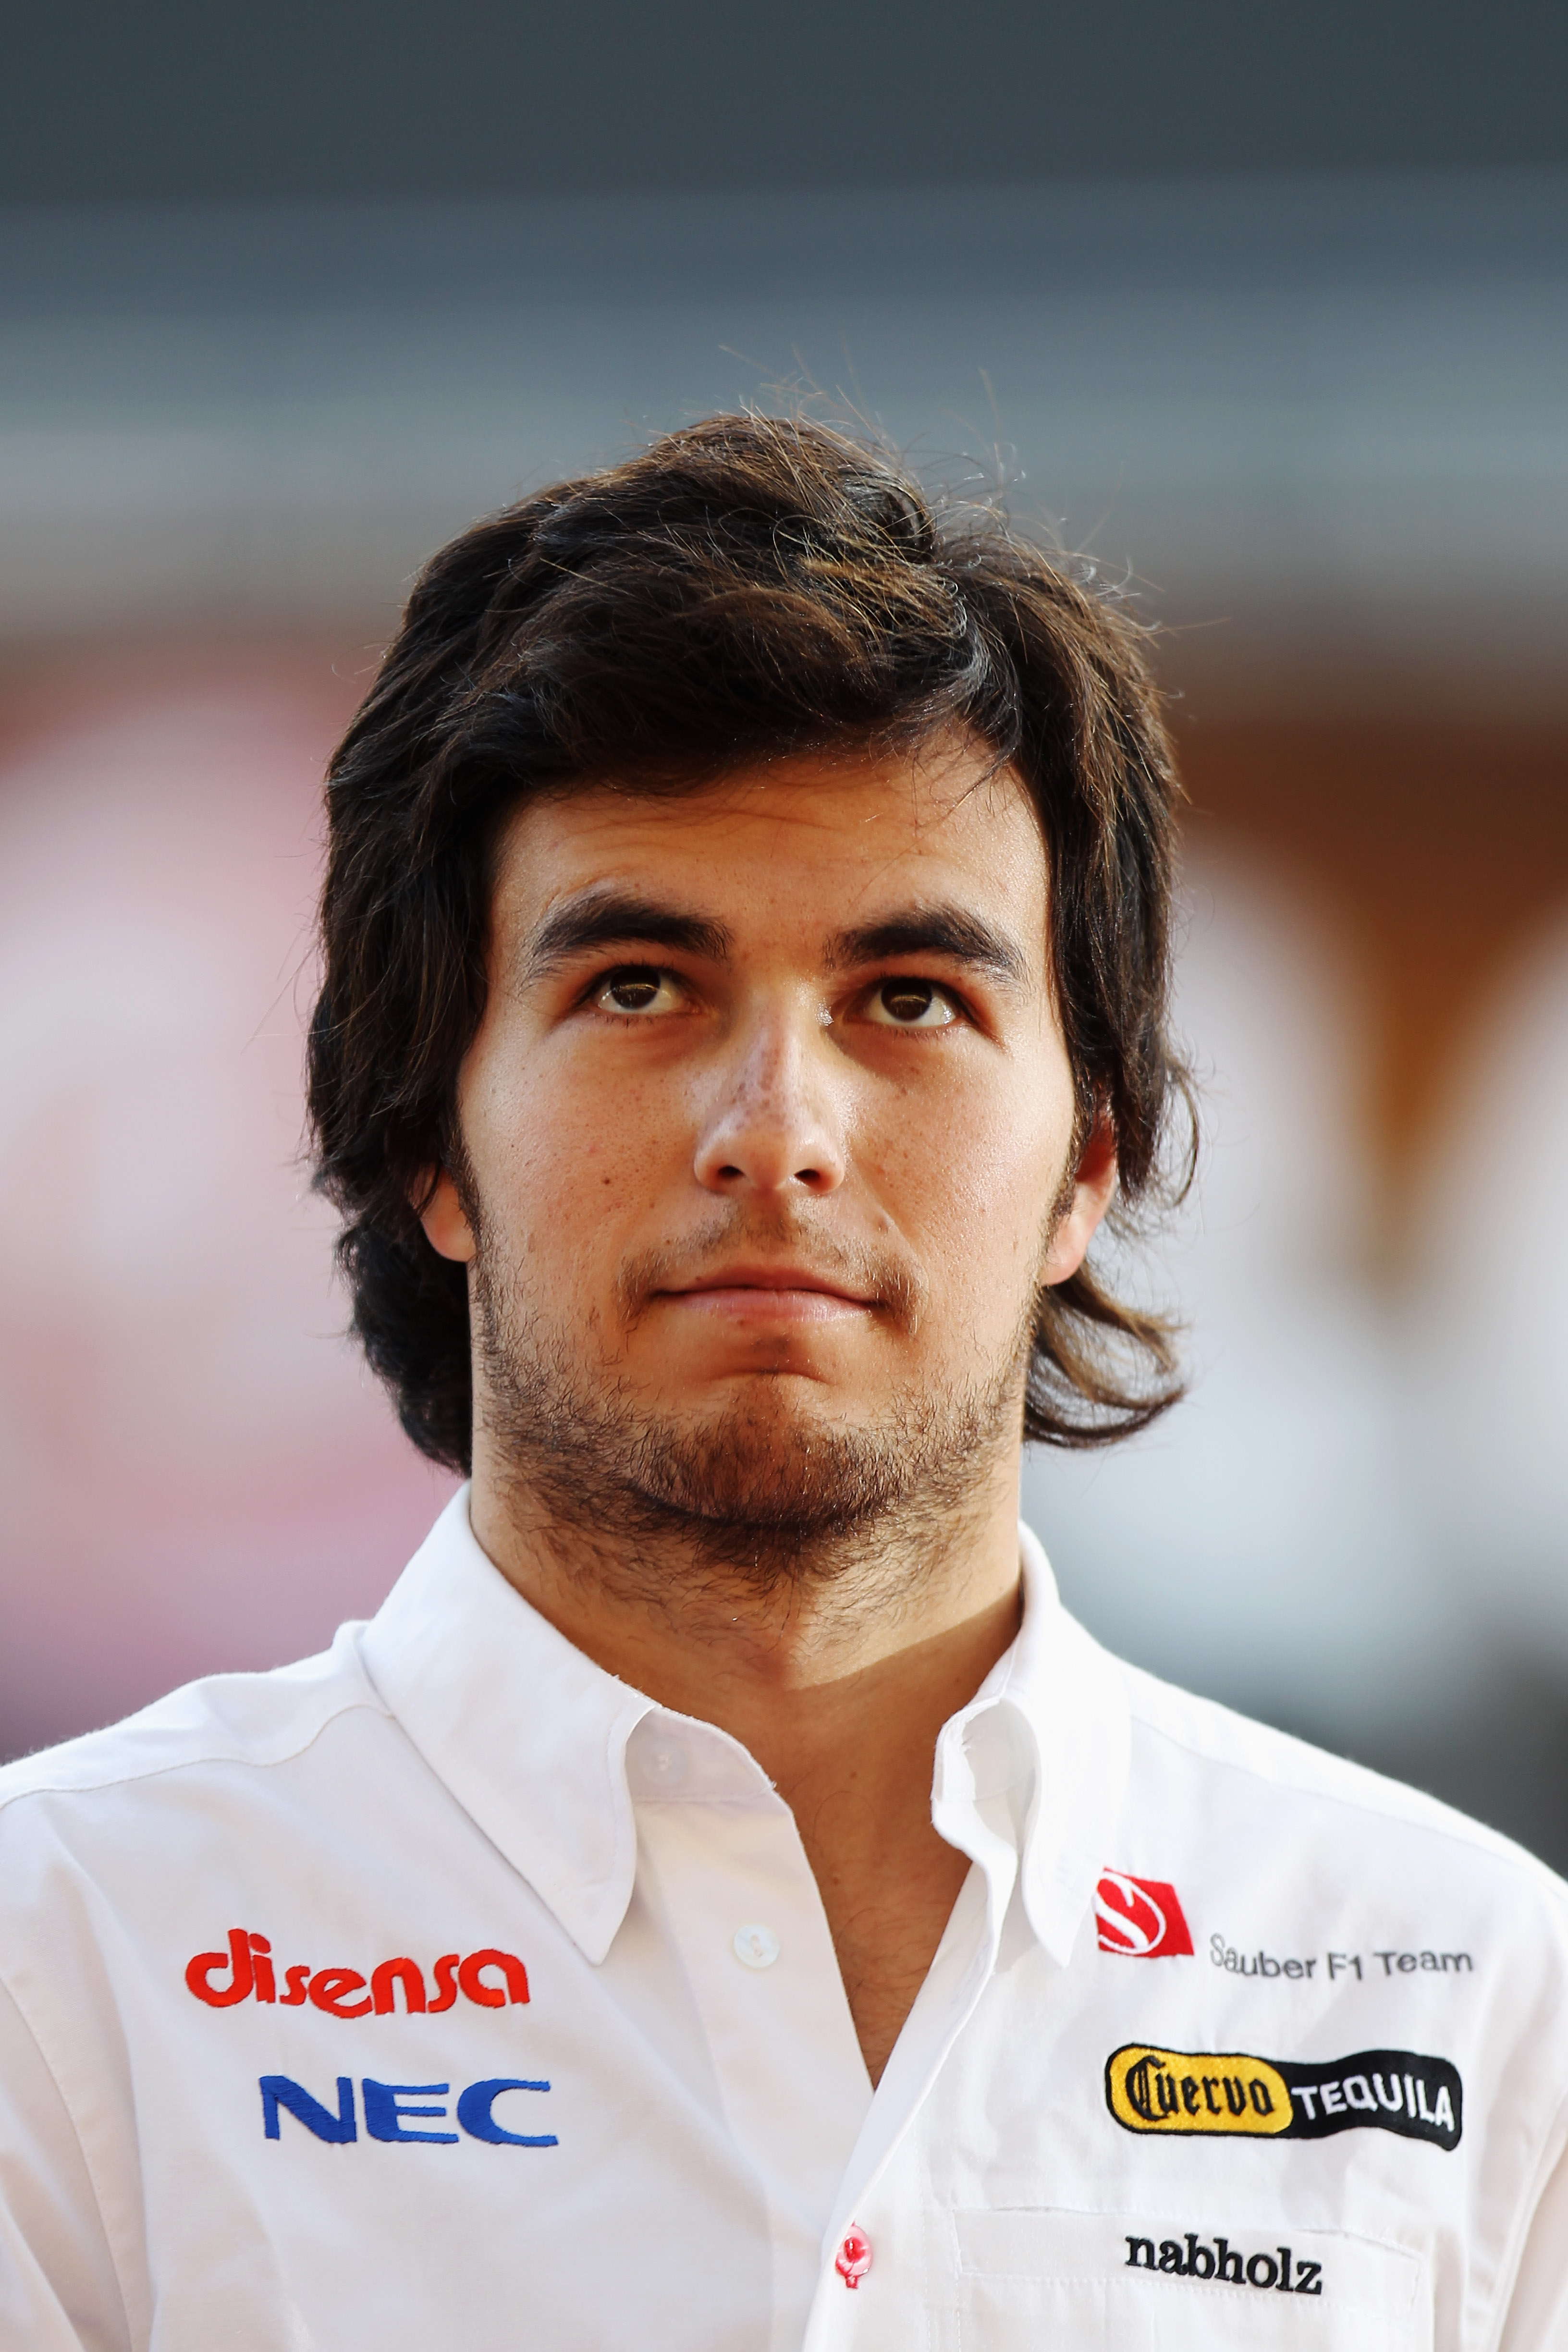 Checo Pérez corría para la escudería Sauber cuando se accidentó en el GP de Mónaco 2011 (Foto: Gettyimages)